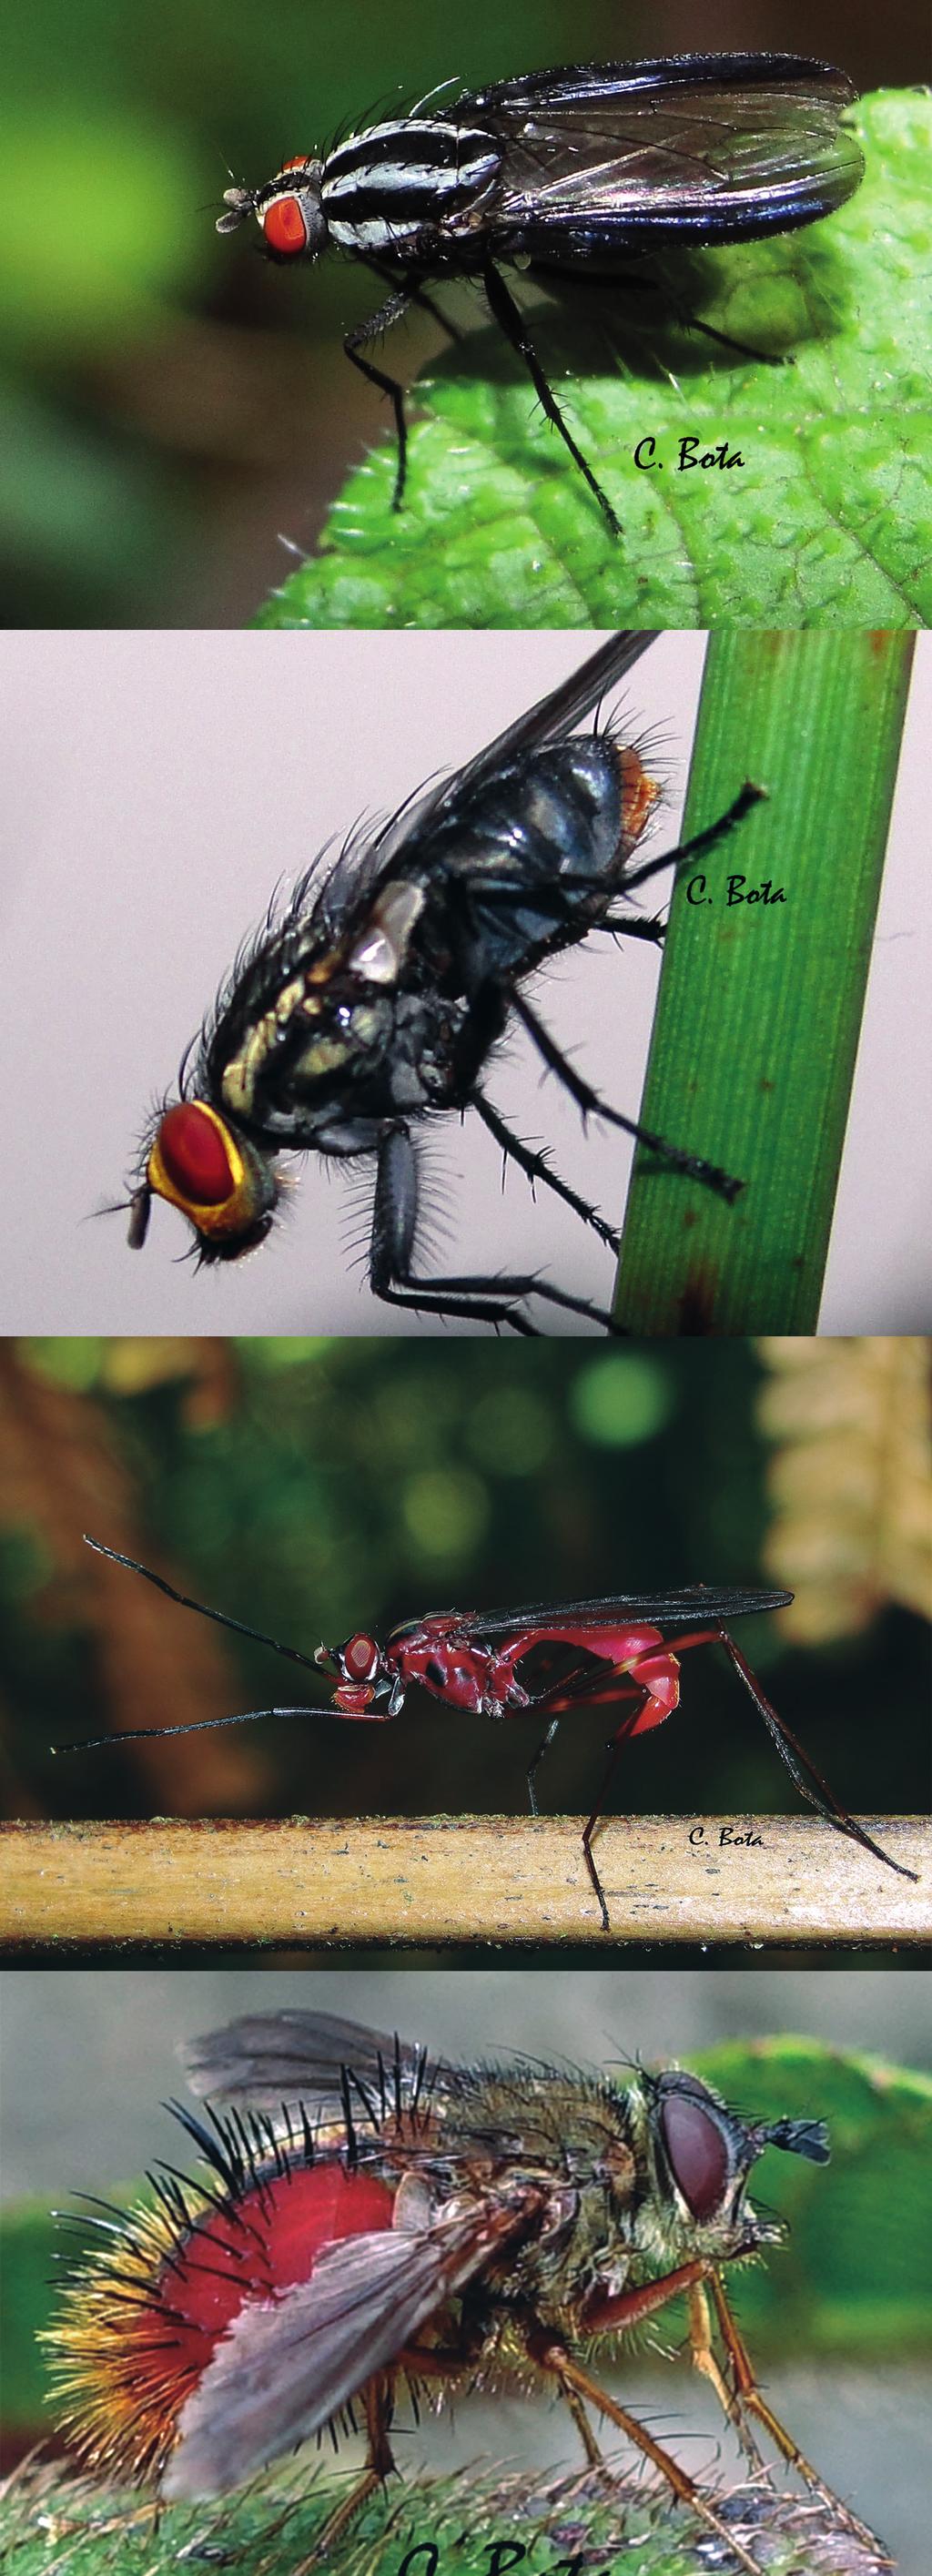 comportamiento de los insectos que allí viven, así como la búsqueda de insectos con los cuales se pueda medir el estado de conservación de una zona determinada.